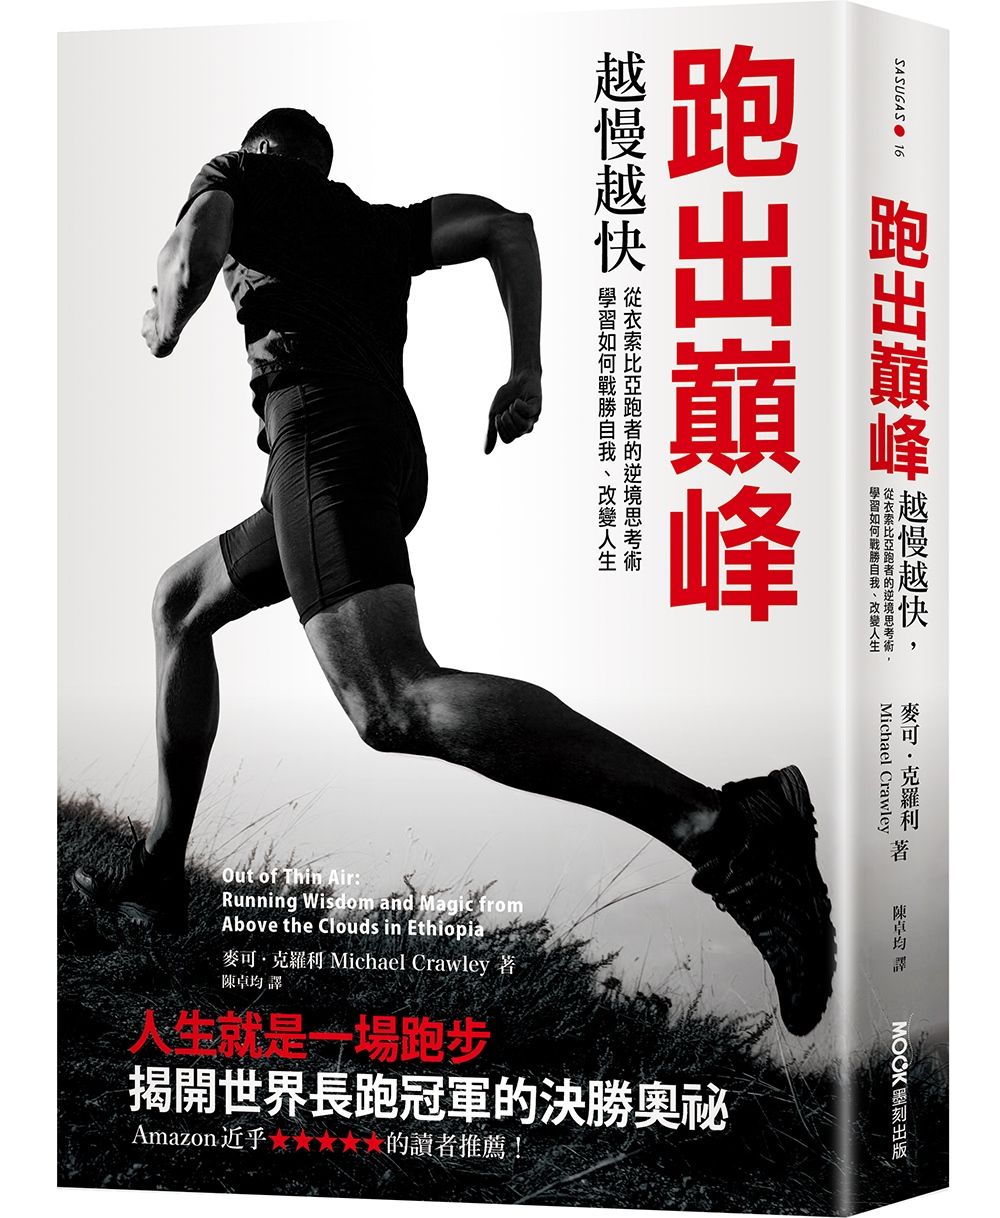 跑出巔峰 : 越慢越快 從衣索比亞跑者的逆境思考術 學習如何戰勝自我.改變人生 的封面图片